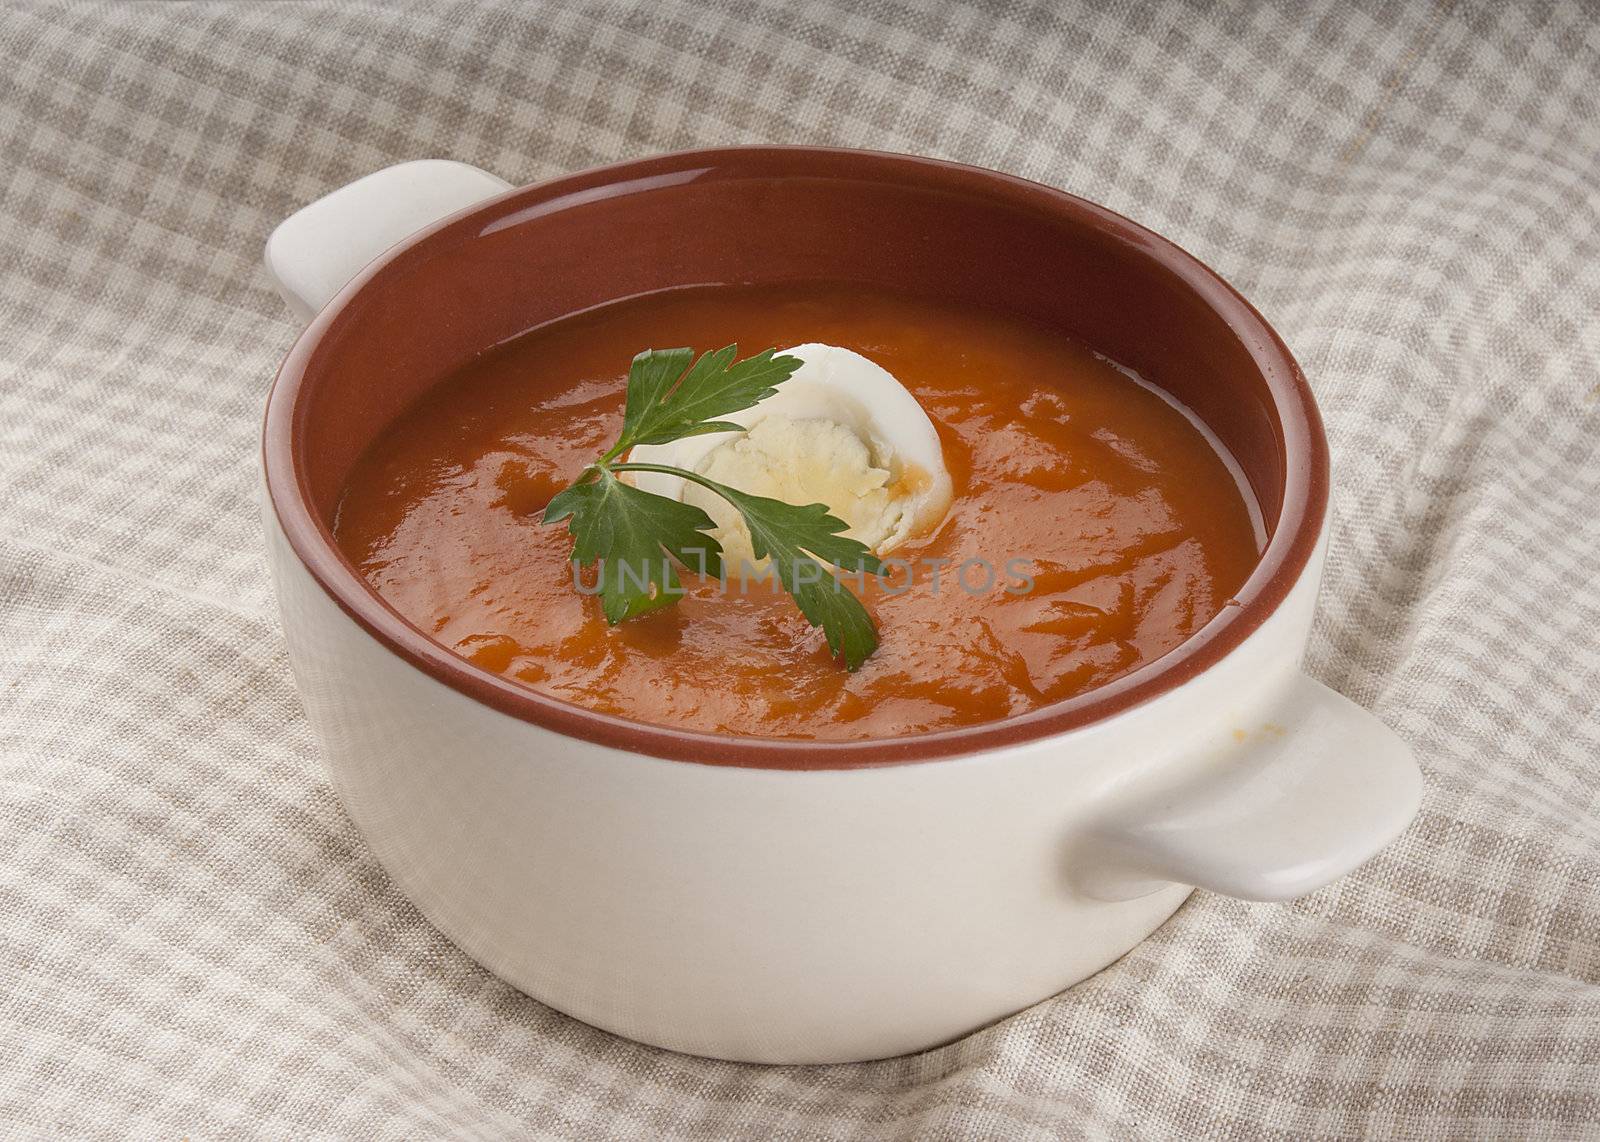 Tomato soup by Angorius